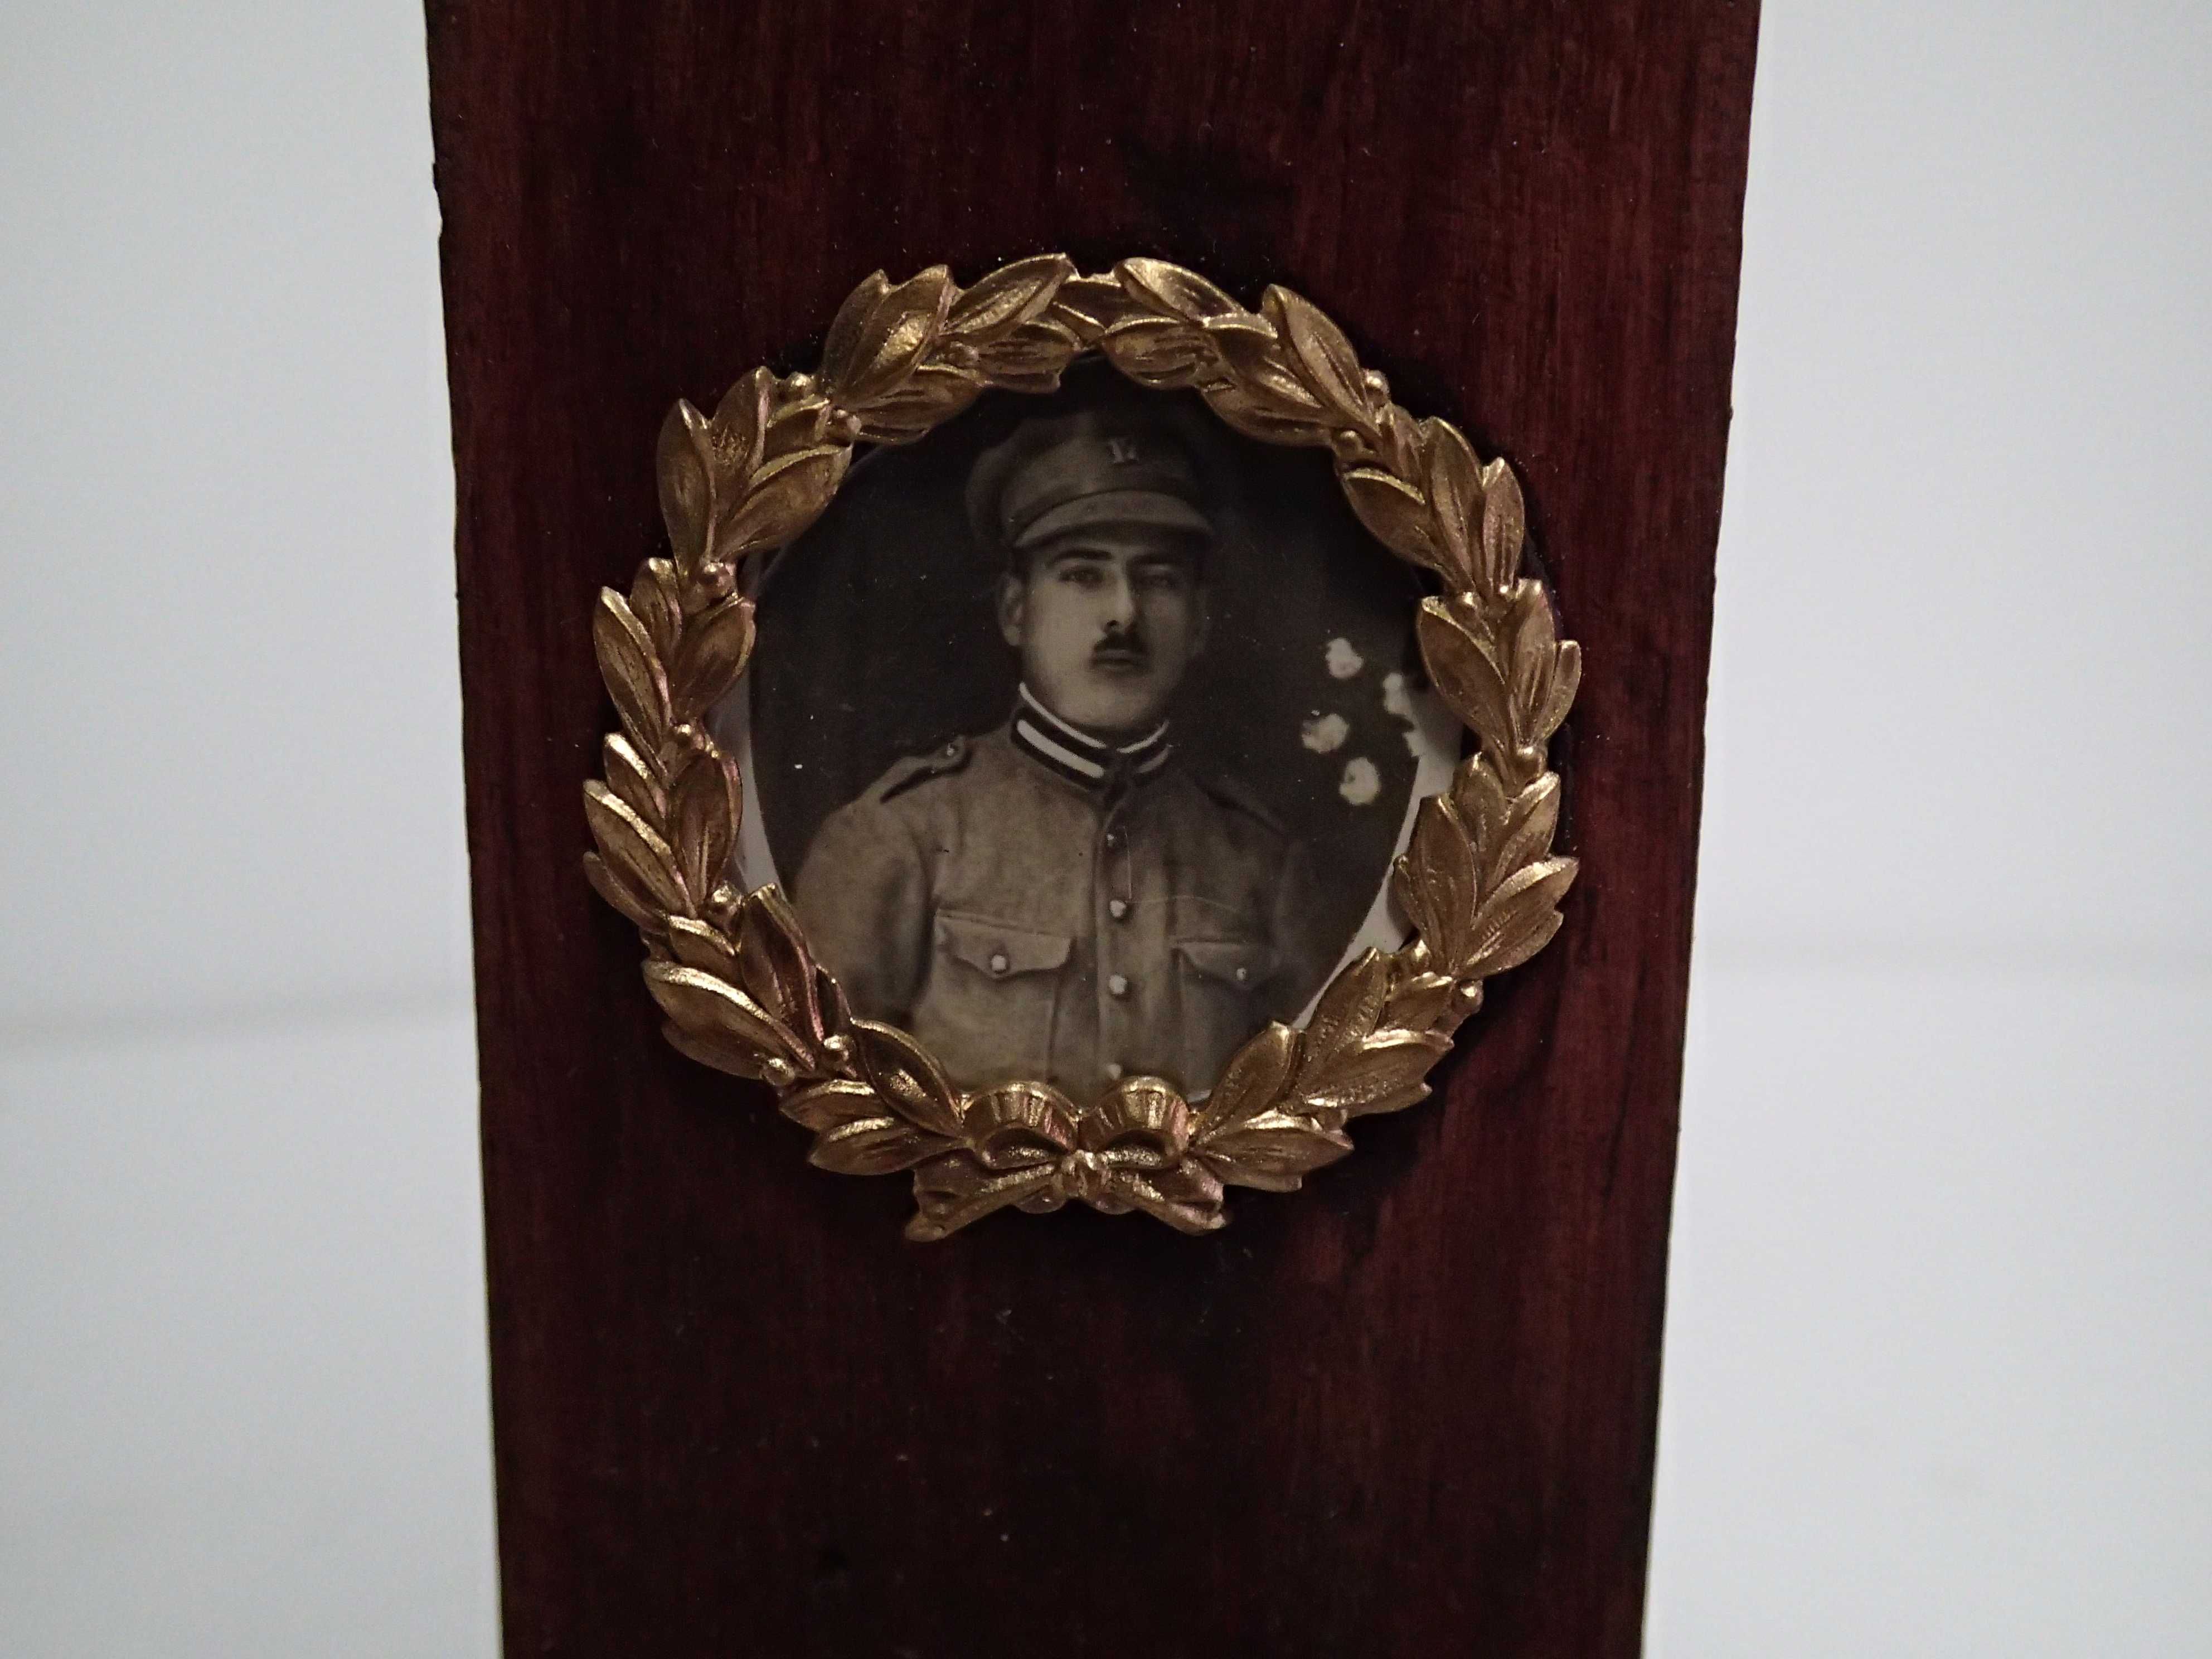 Moldura em madeira com foto militar antiga